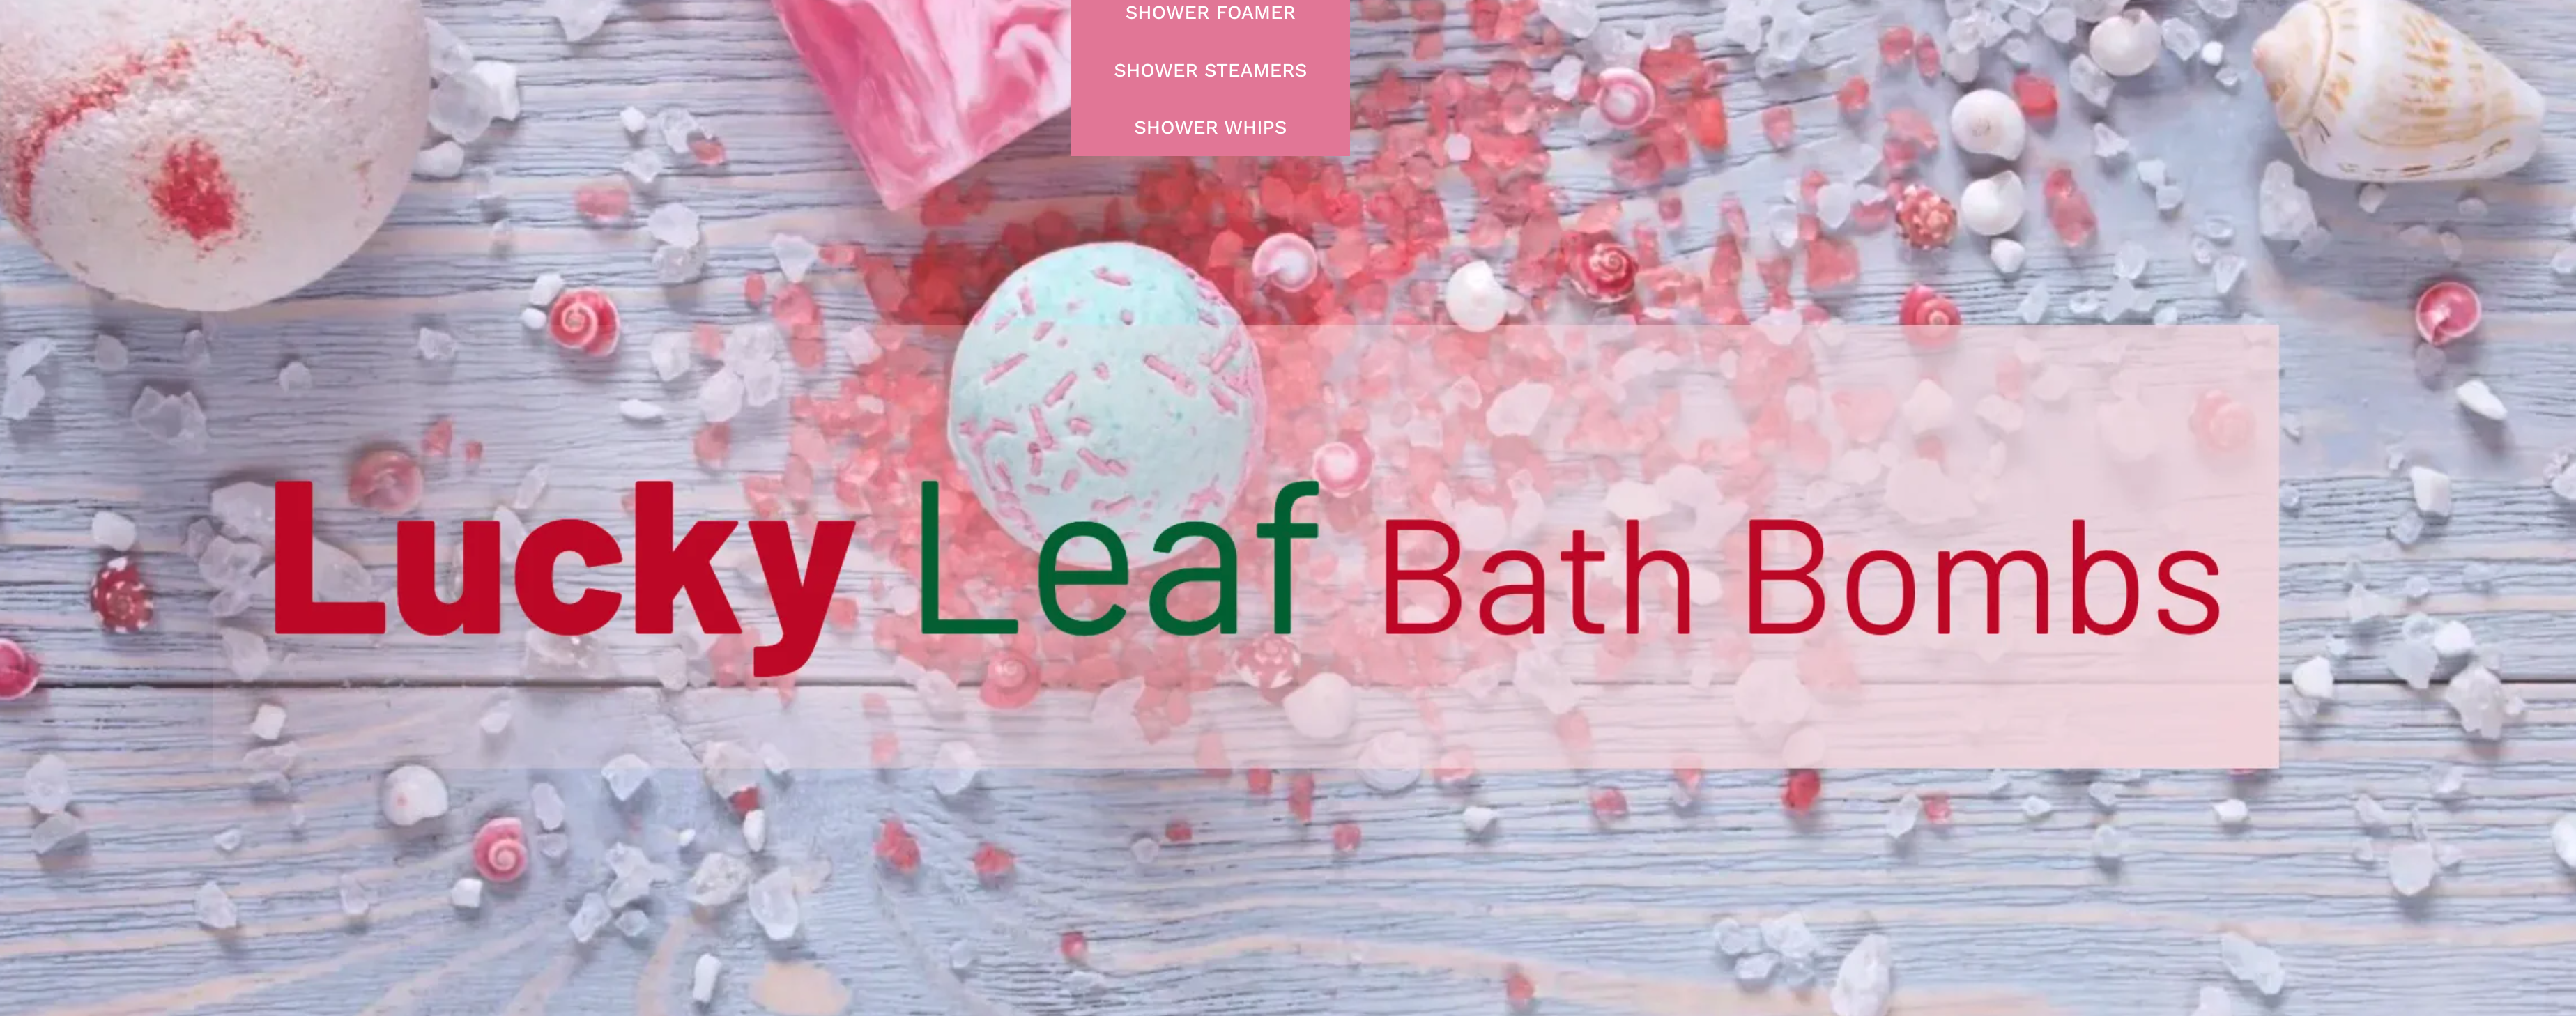 lucky leaf bath bombs logo